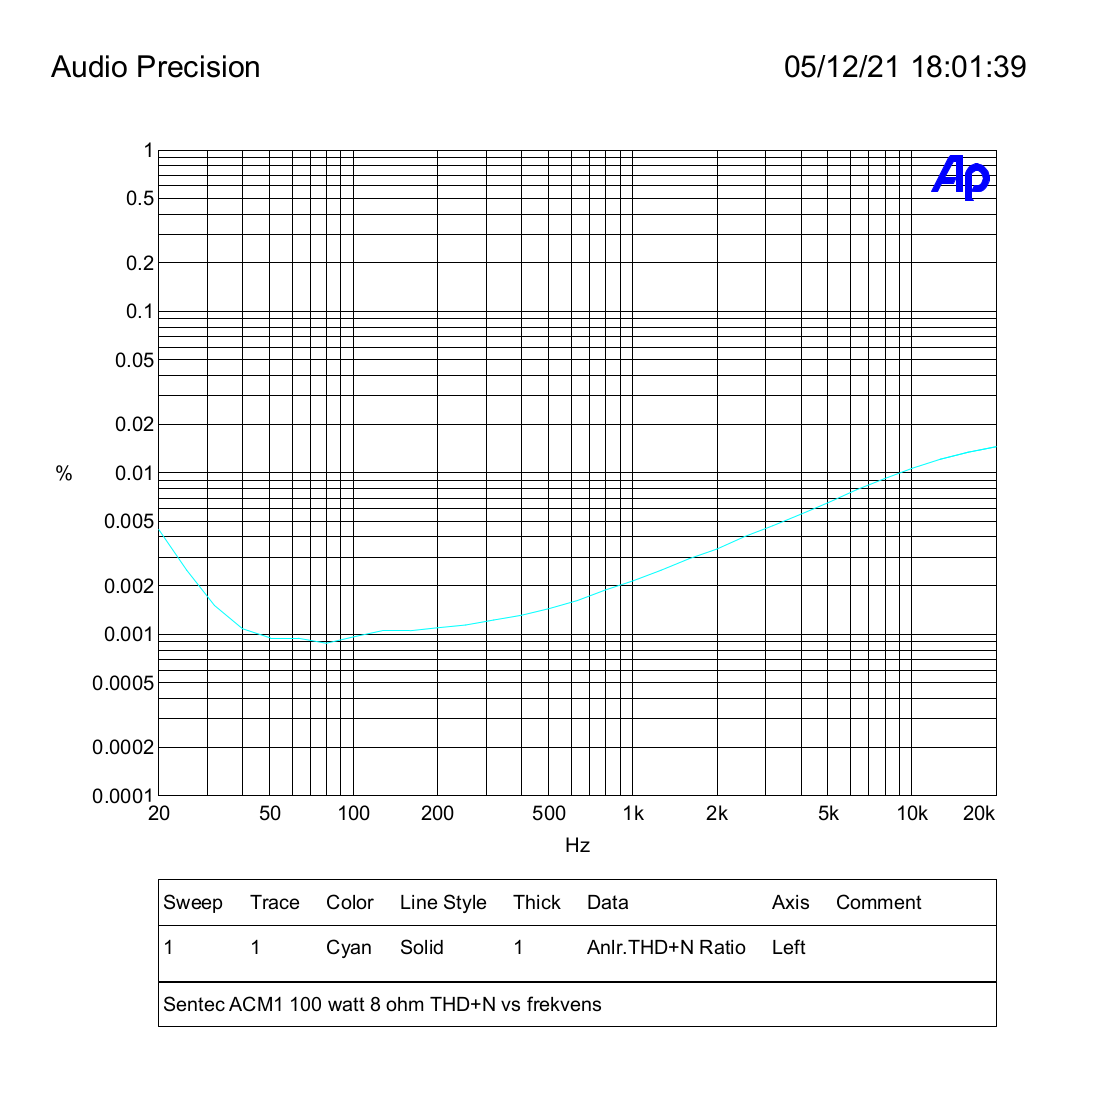 Sentec ACM1 100 watt 8 ohm THD+N vs frekvens.png